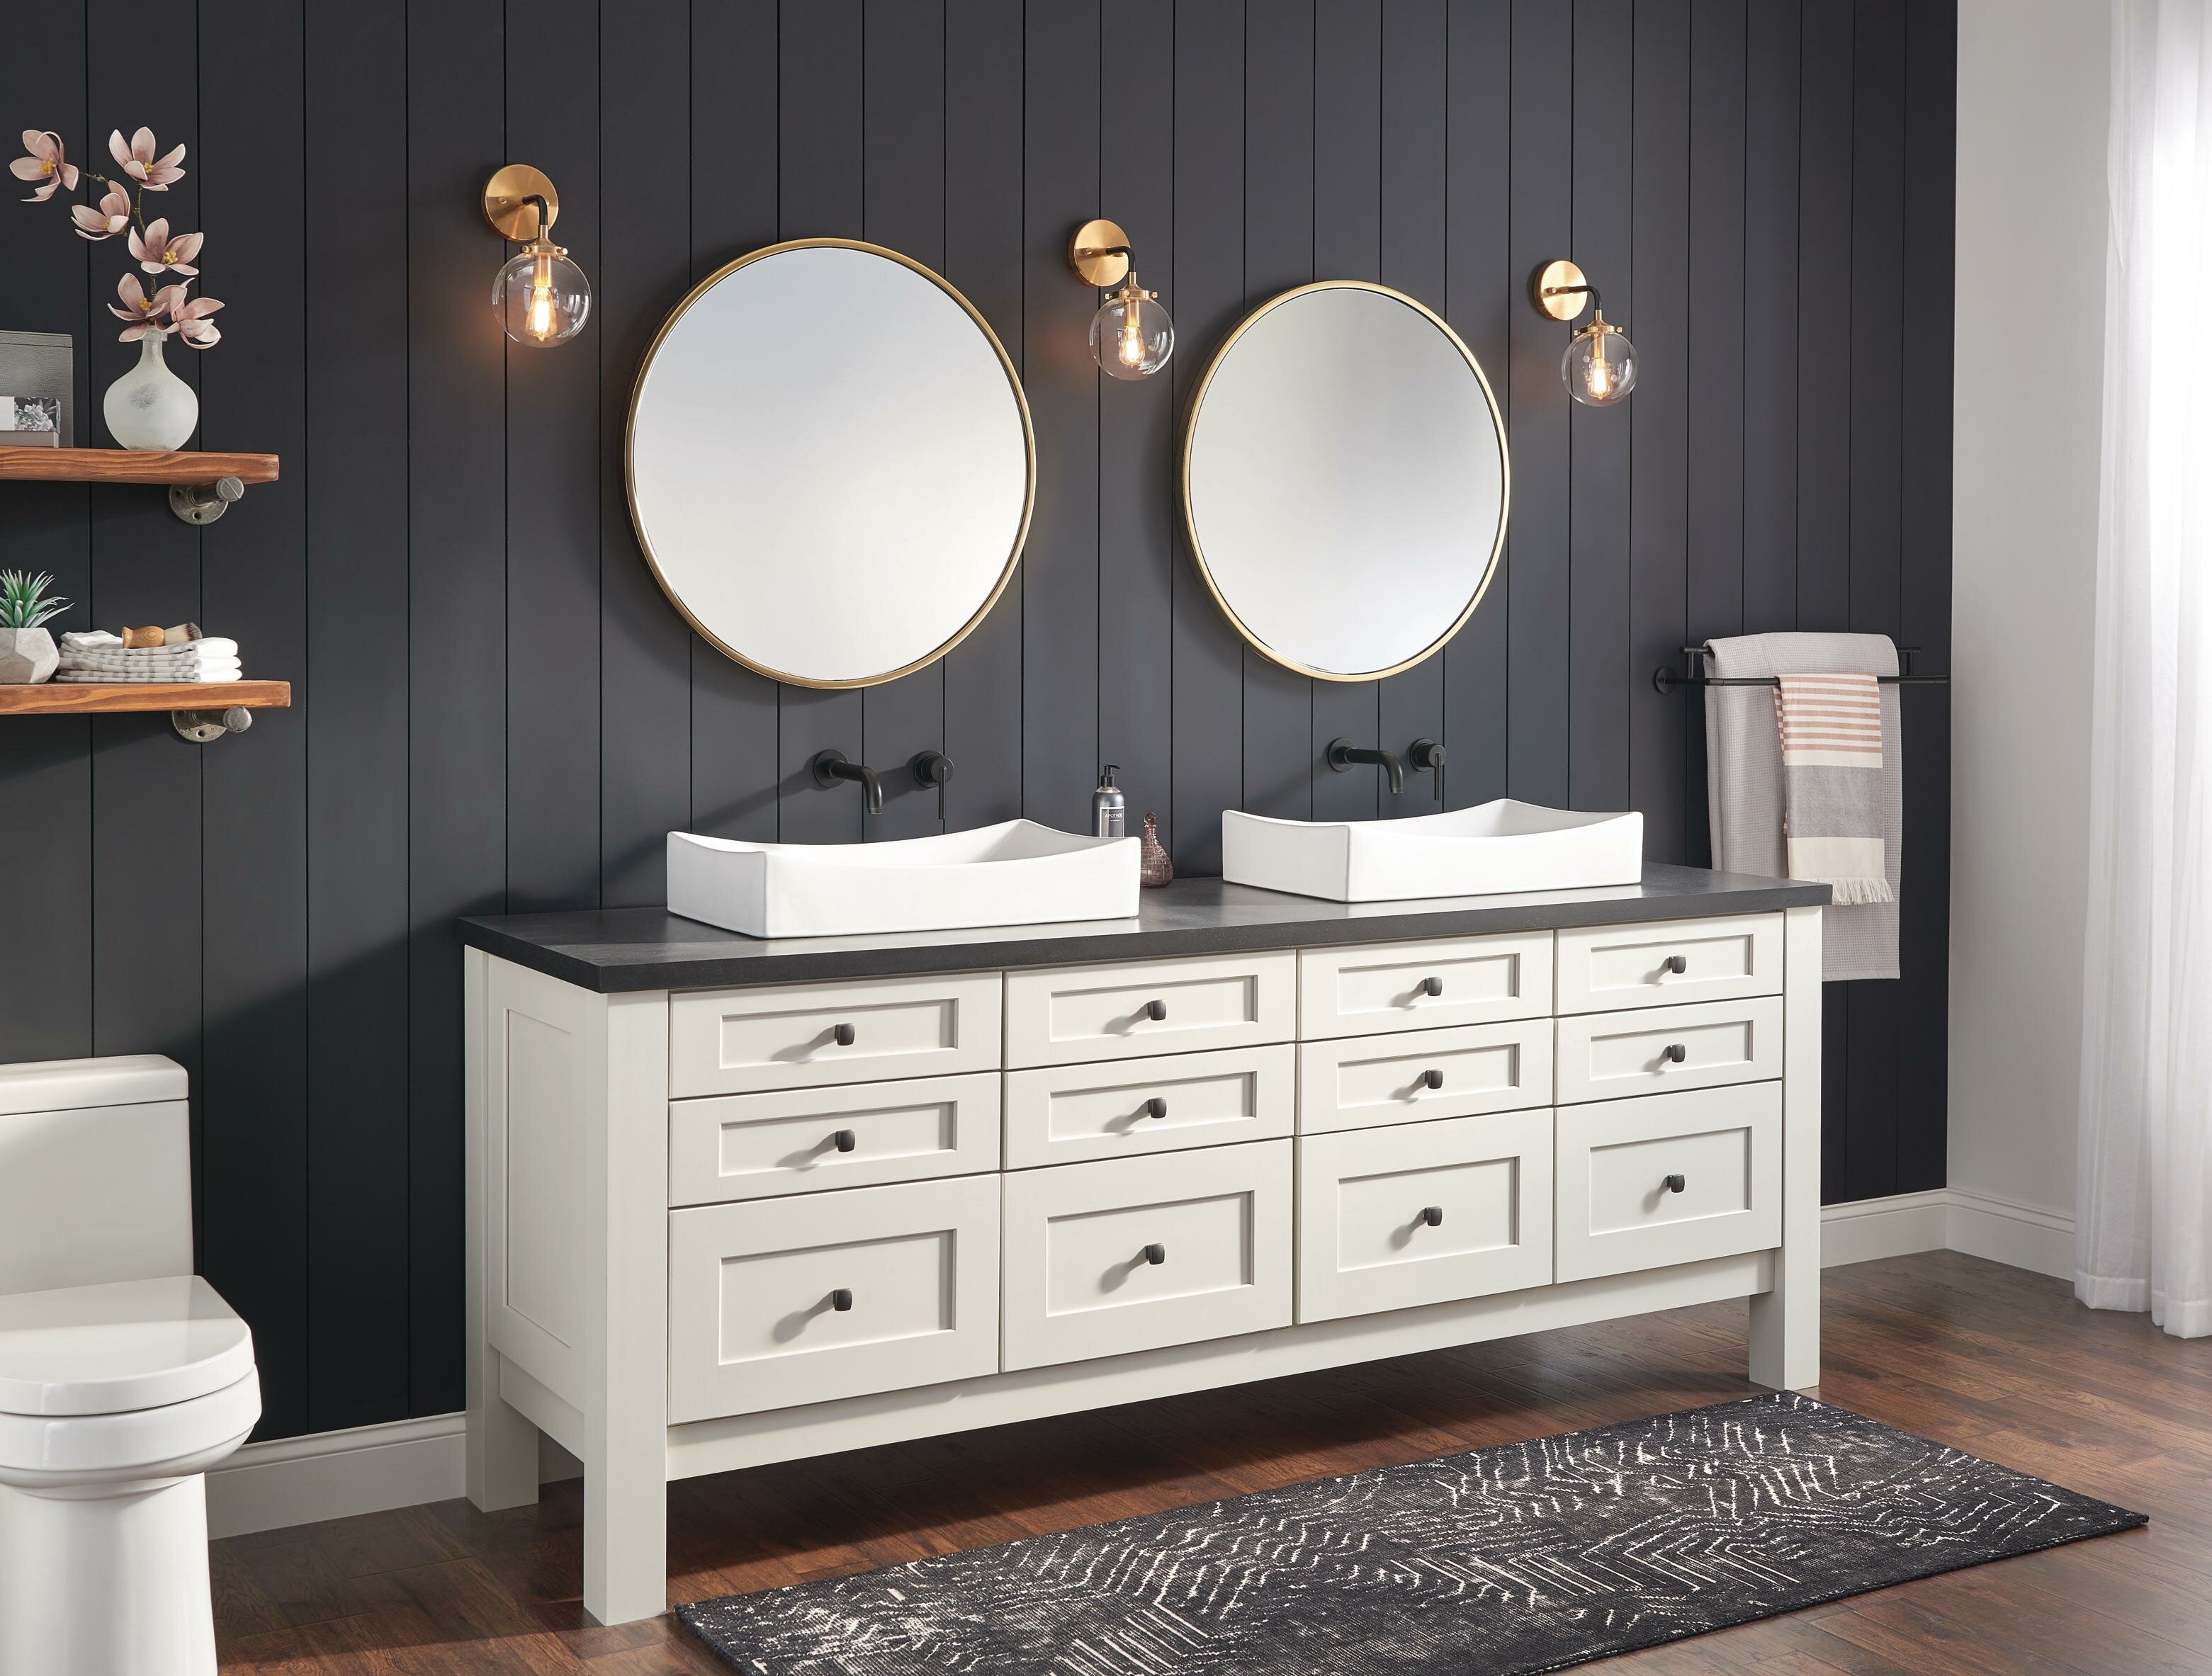 11 Bathroom Mirror Ideas For Every Style Wayfair